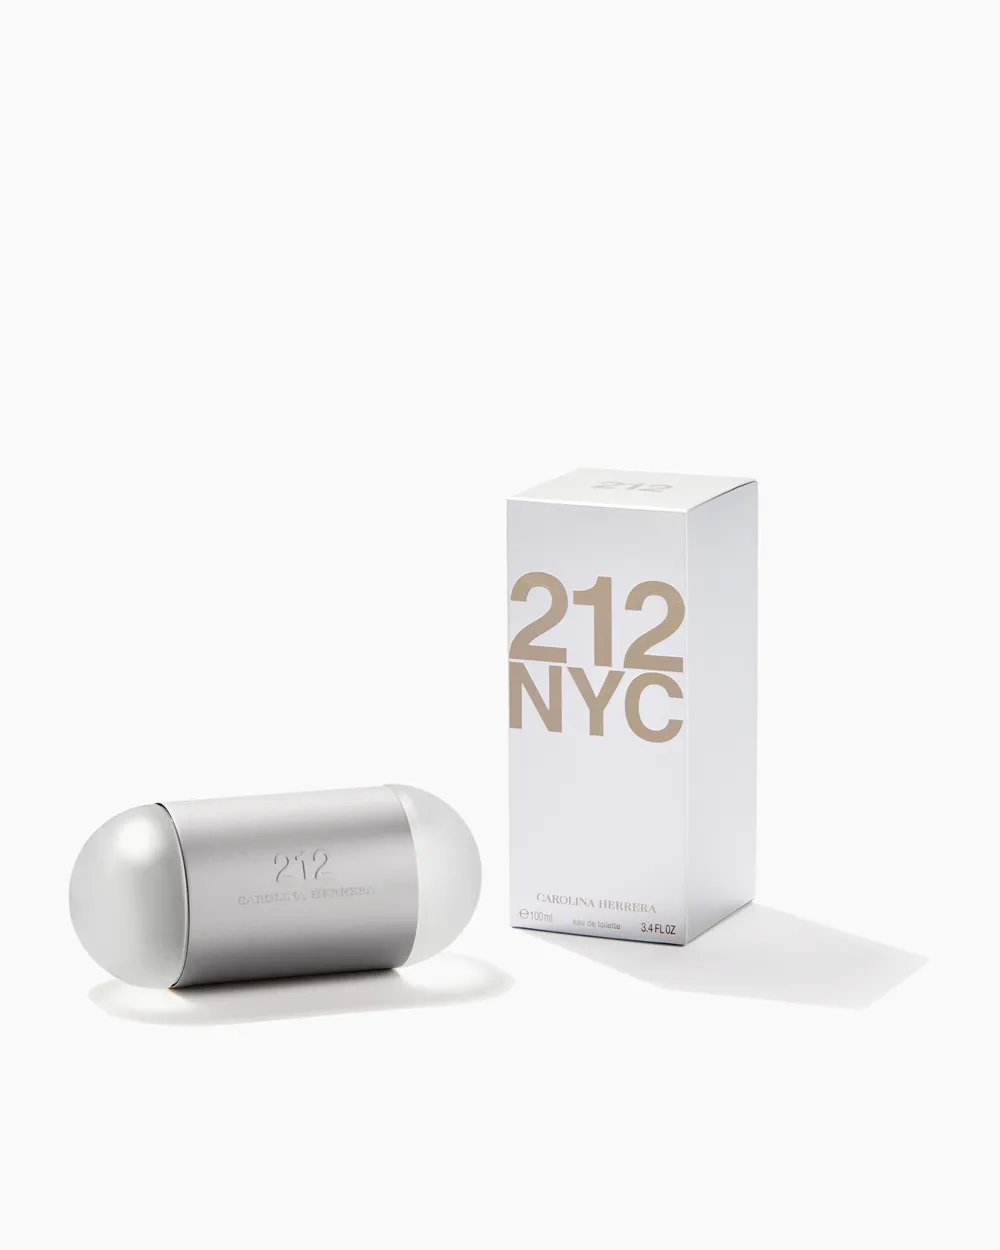 El Mejor Perfume 212 NYC aroma floral 100ml carolina herrera frasco gris seductor encantador